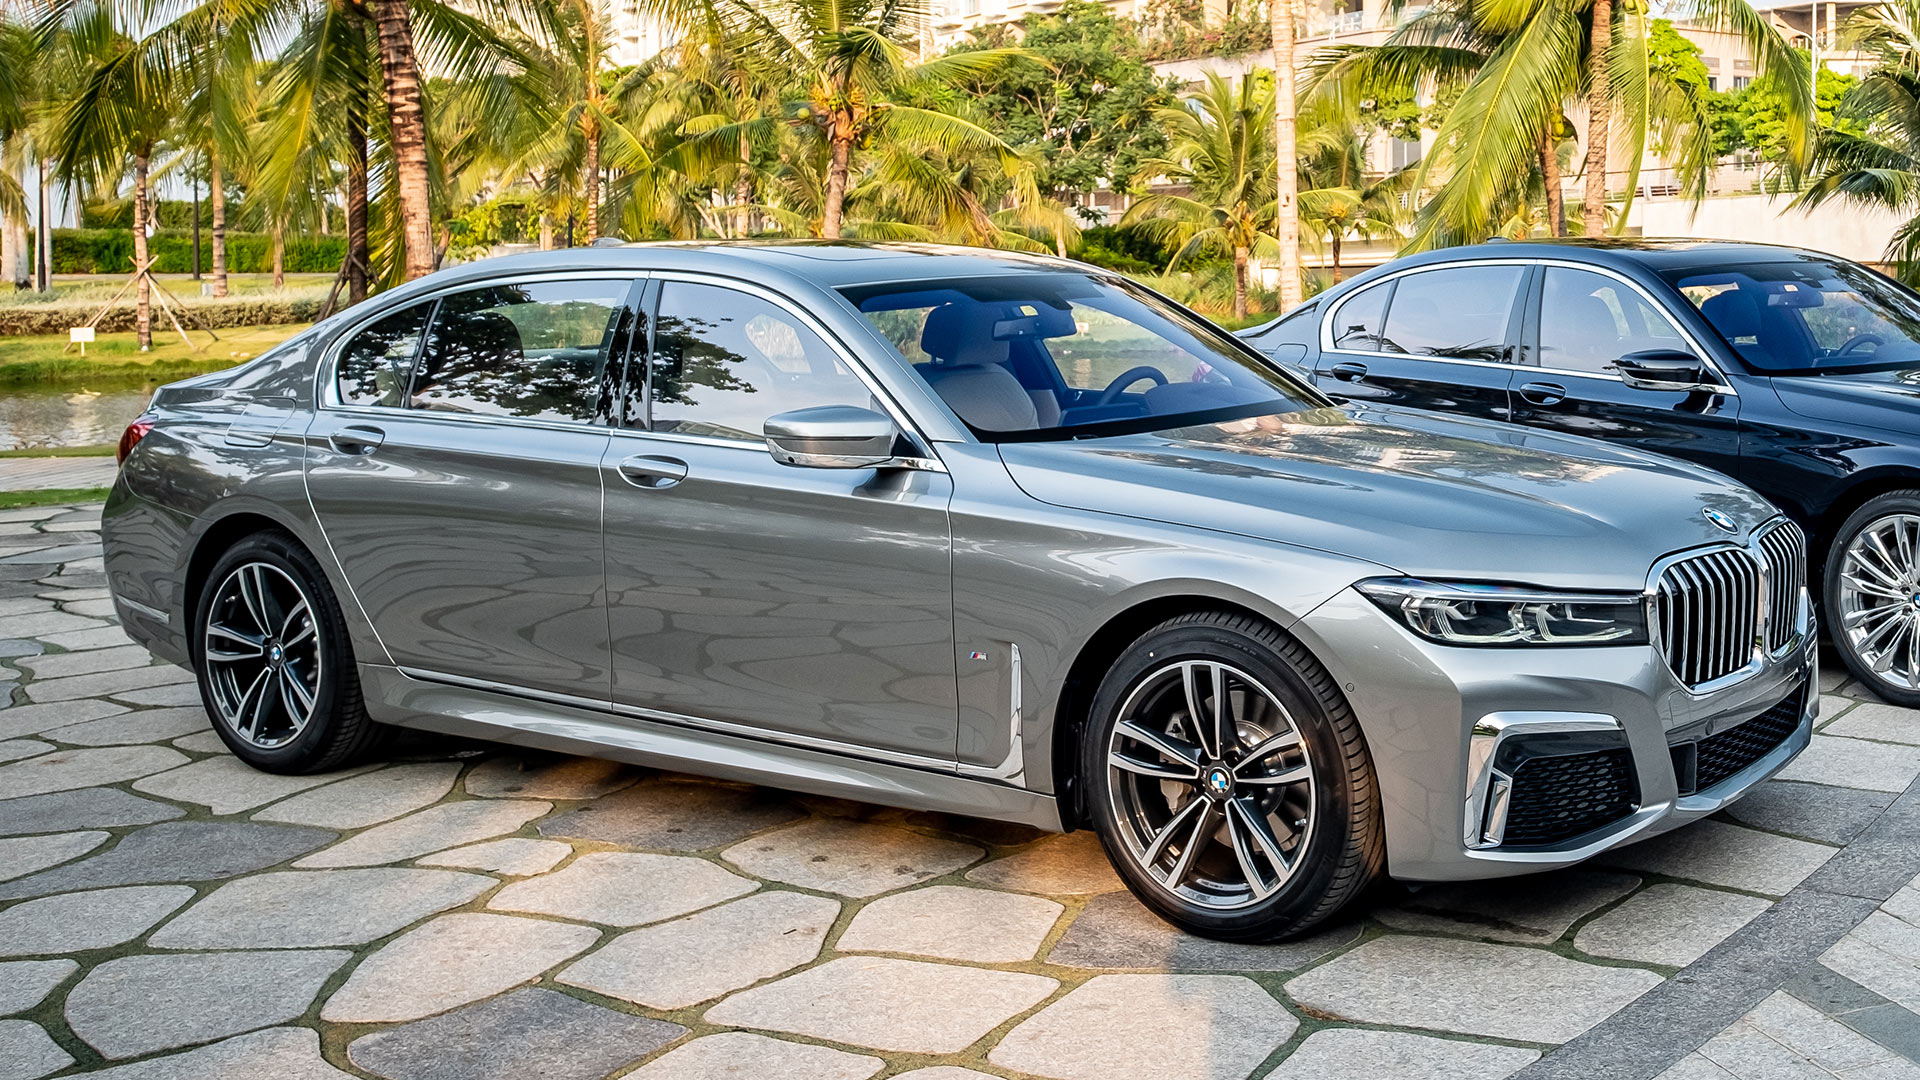 Hơn 4,3 tỷ đồng, BMW 730 M Sport 2020 và Pure Excellence 2020 được trang bị những gì?